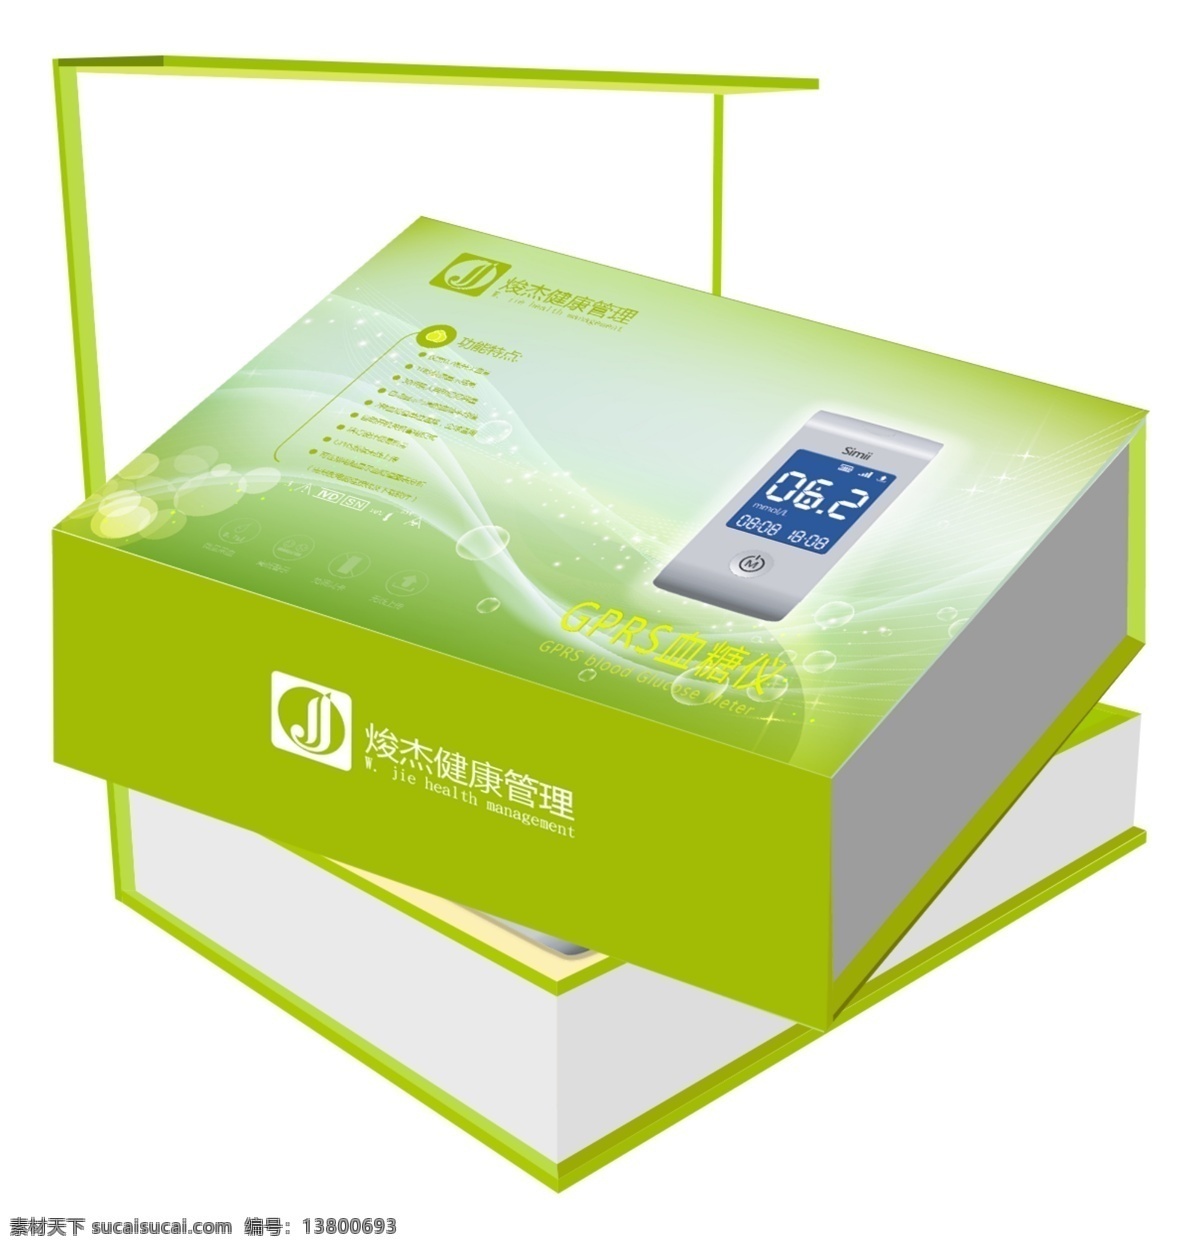 包装 包装封面 包装盒 包装设计 包装素材 分层 包装盒包装 盒子 盒子设计 设计素材 绿色包装盒 健康包装盒 白色